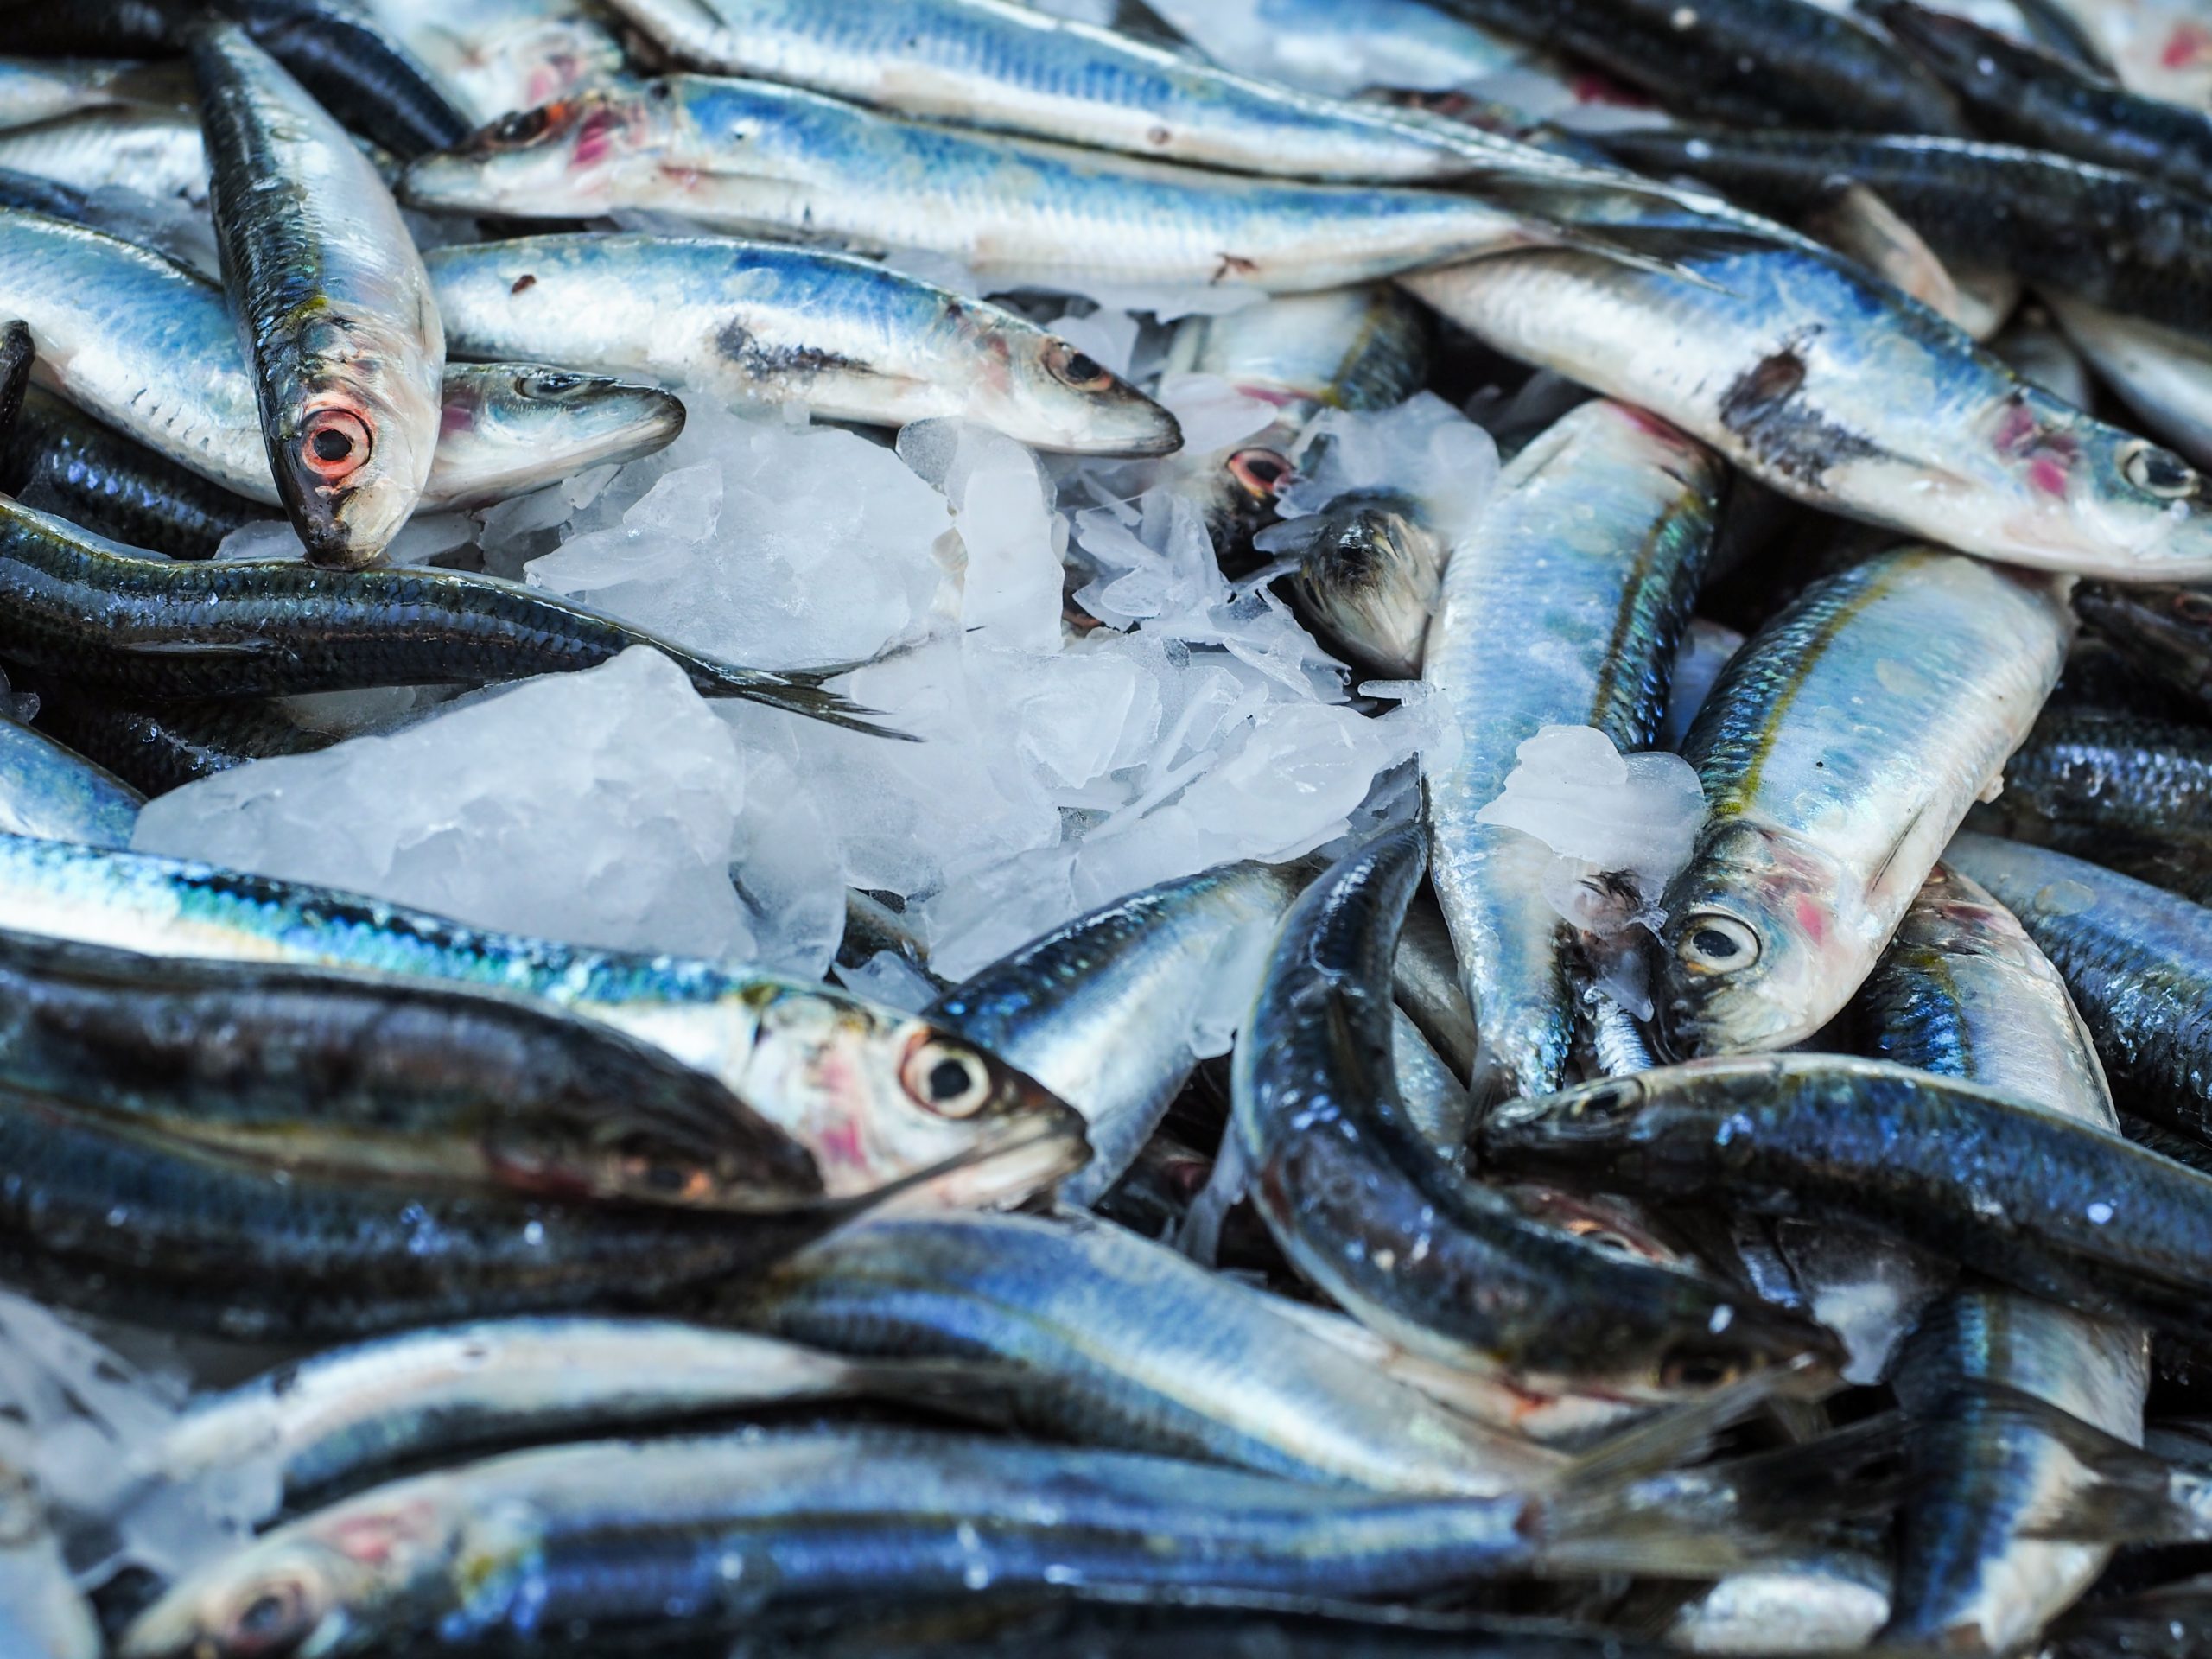 Continuamos con la identificación de experiencias para reducir el desperdicio de pescado